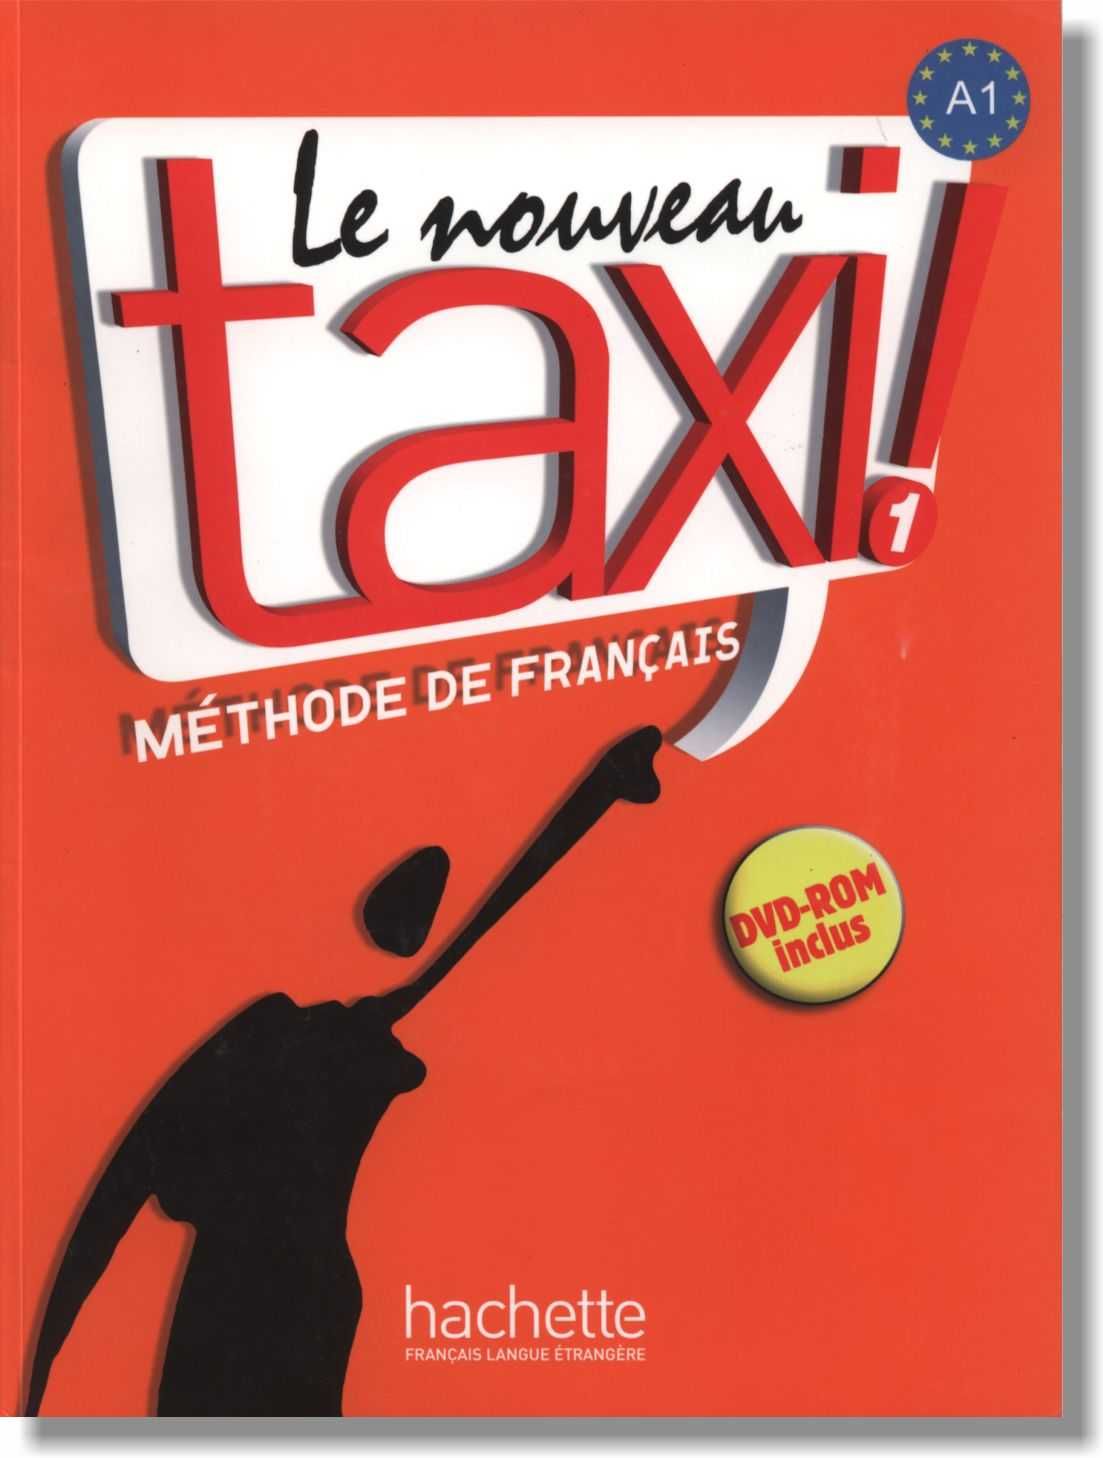 Цветные учебники французского языка Le nouveau Taxi 1 и 2.